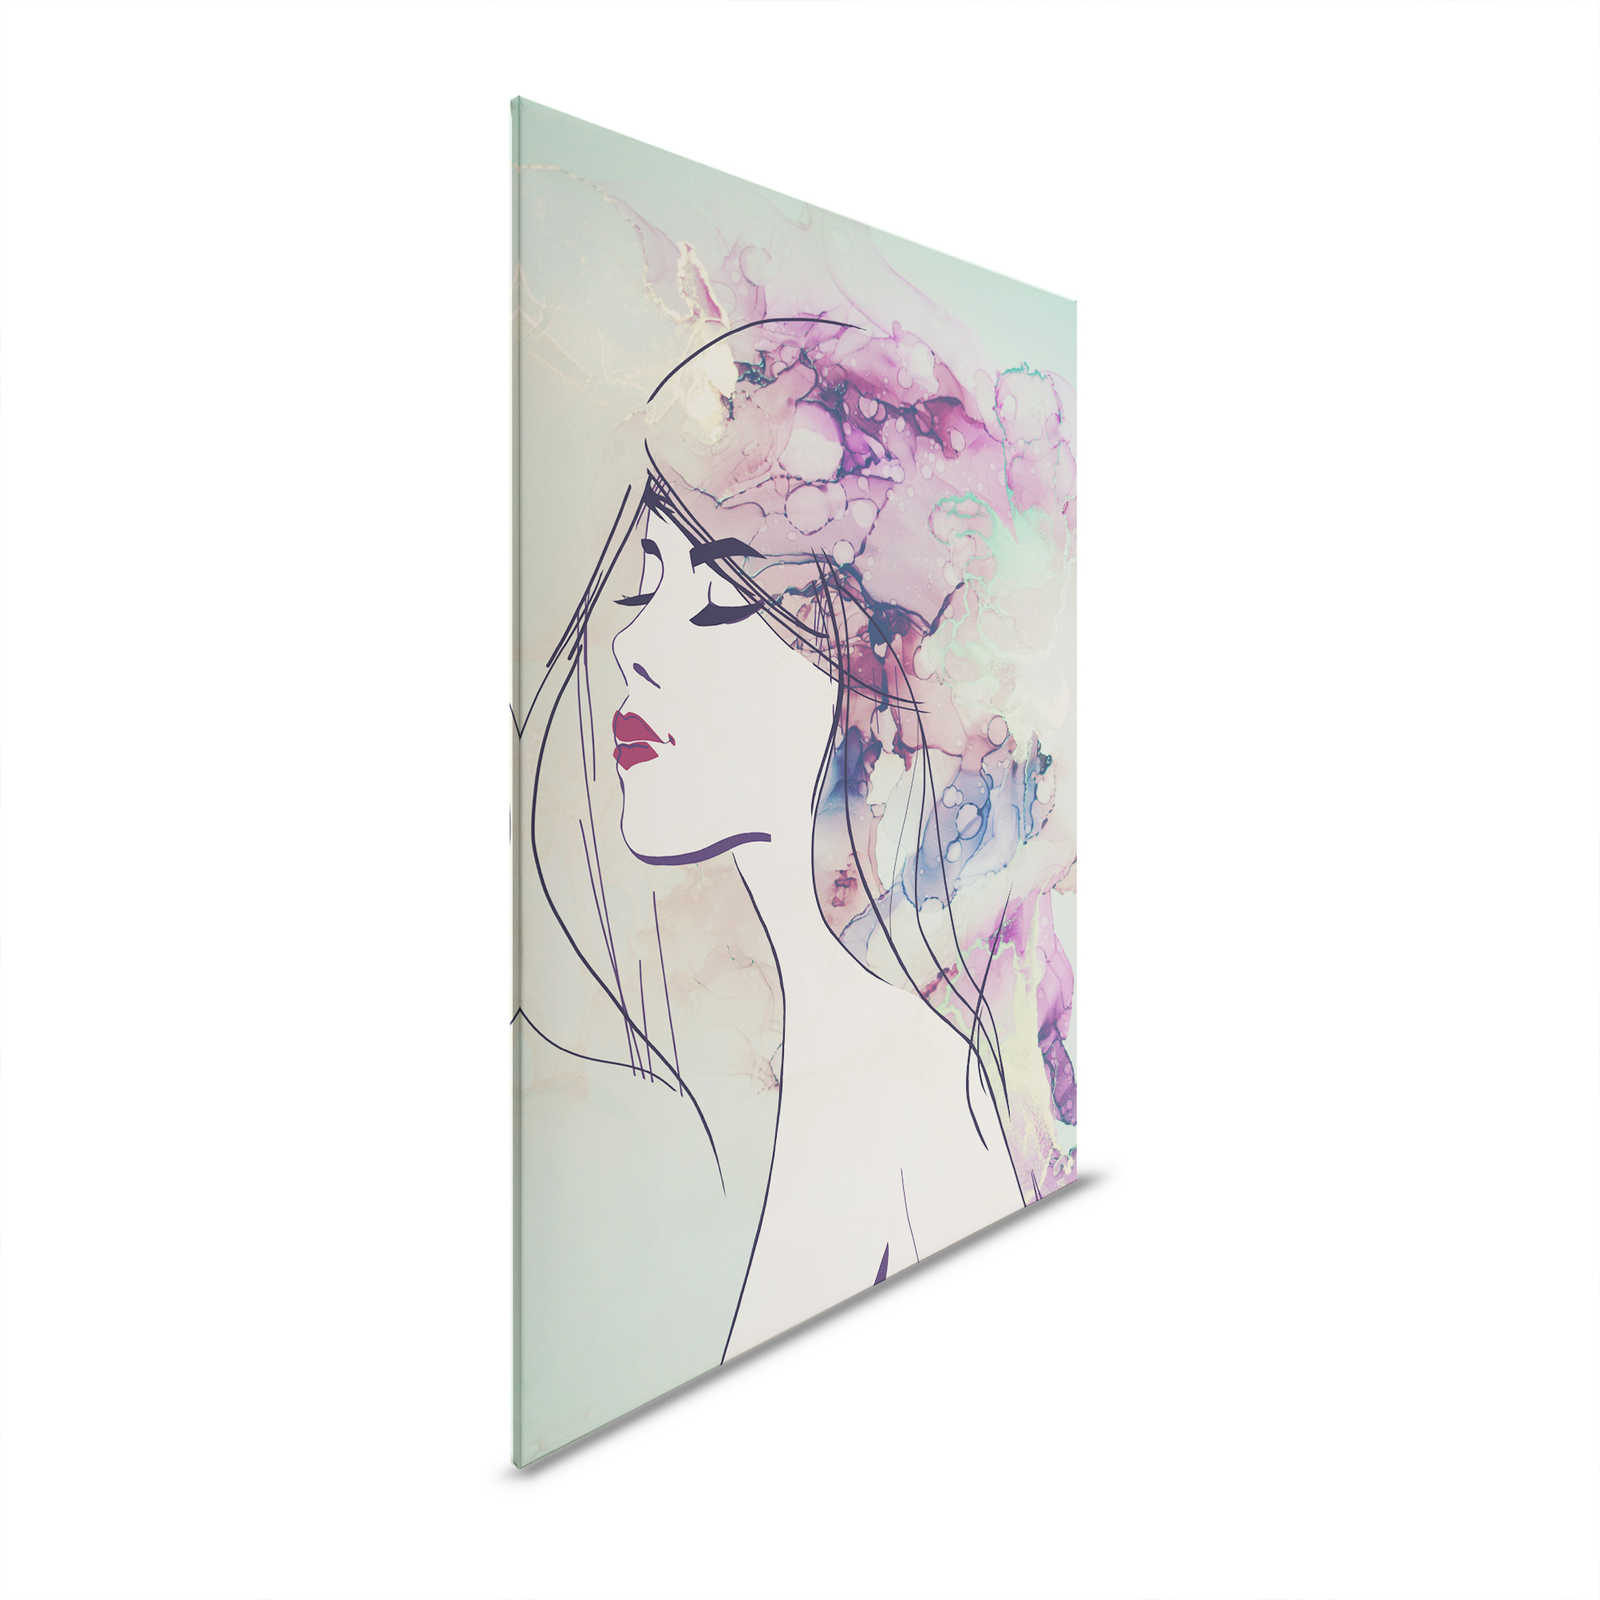 Acryl Design Canvas Schilderen Vrouw Gezicht in Turquoise & Paars - 1,20 m x 0,80 m
